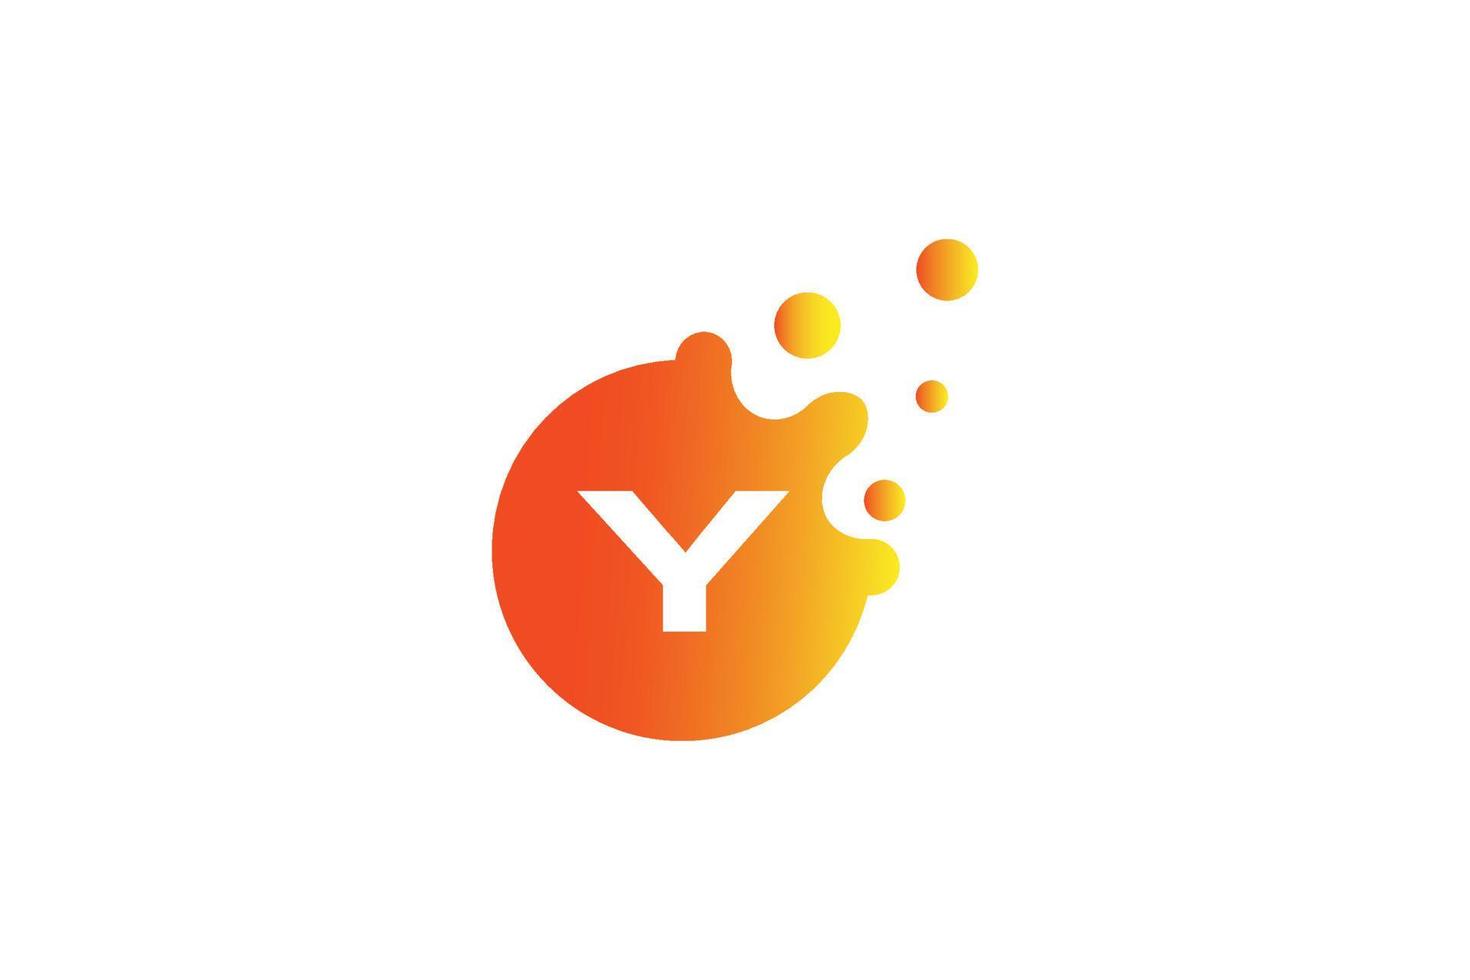 logo de la lettre y. vecteur de conception de lettre y avec illustration vectorielle de points. logo de marque de lettre avec dégradé orange et jaune.